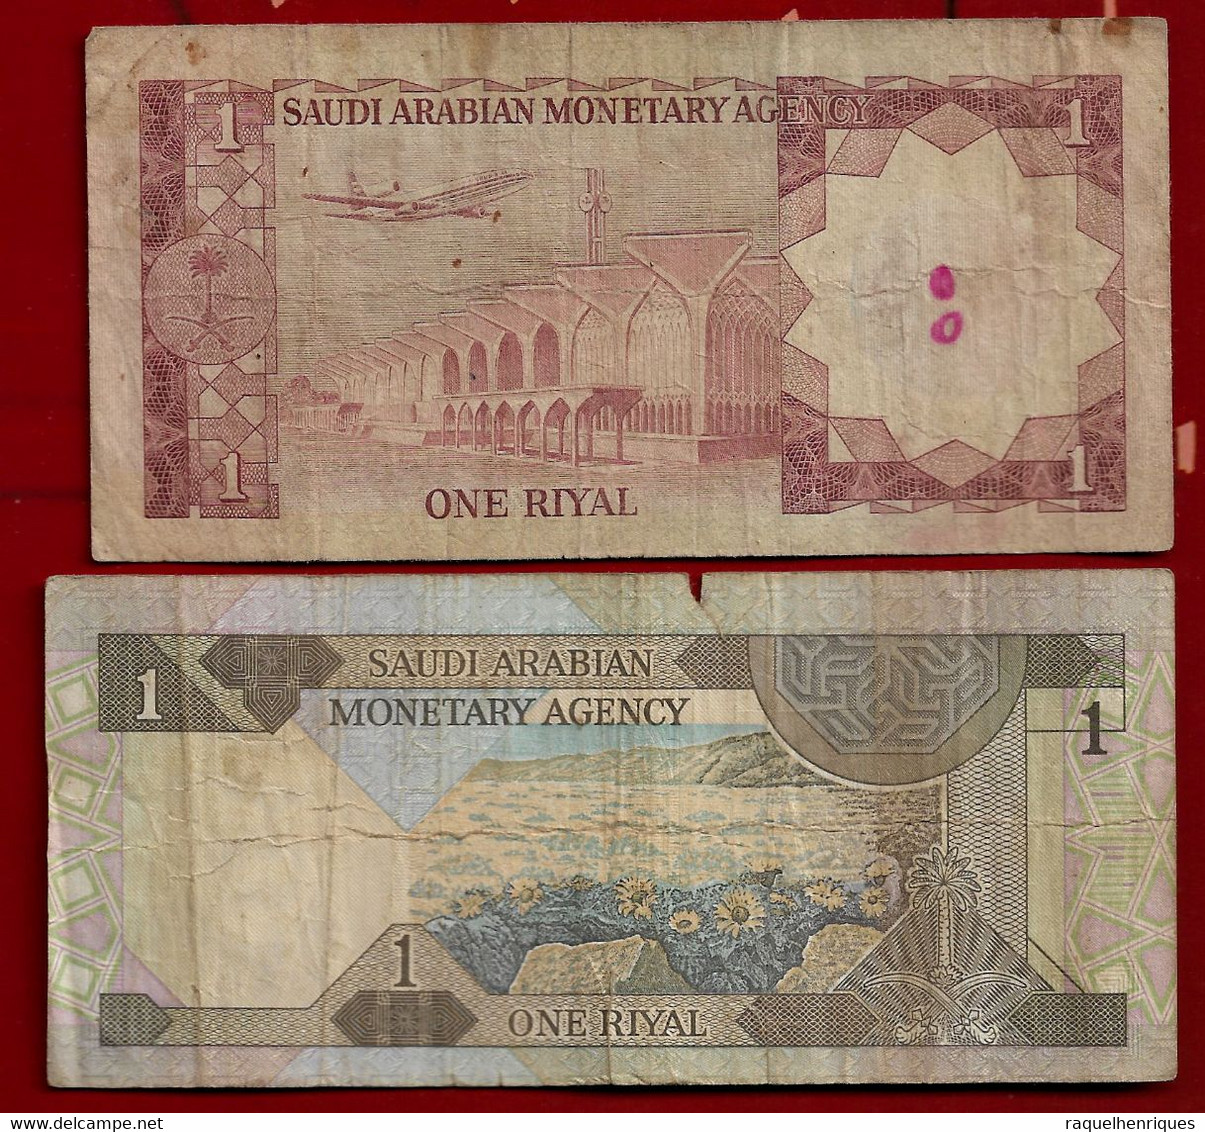 SAUDI ARABIA BANKNOTE - 2 NOTES 1 RIYAL (1984) - (1977) P#21d-16 F (NT#03) - Saudi-Arabien